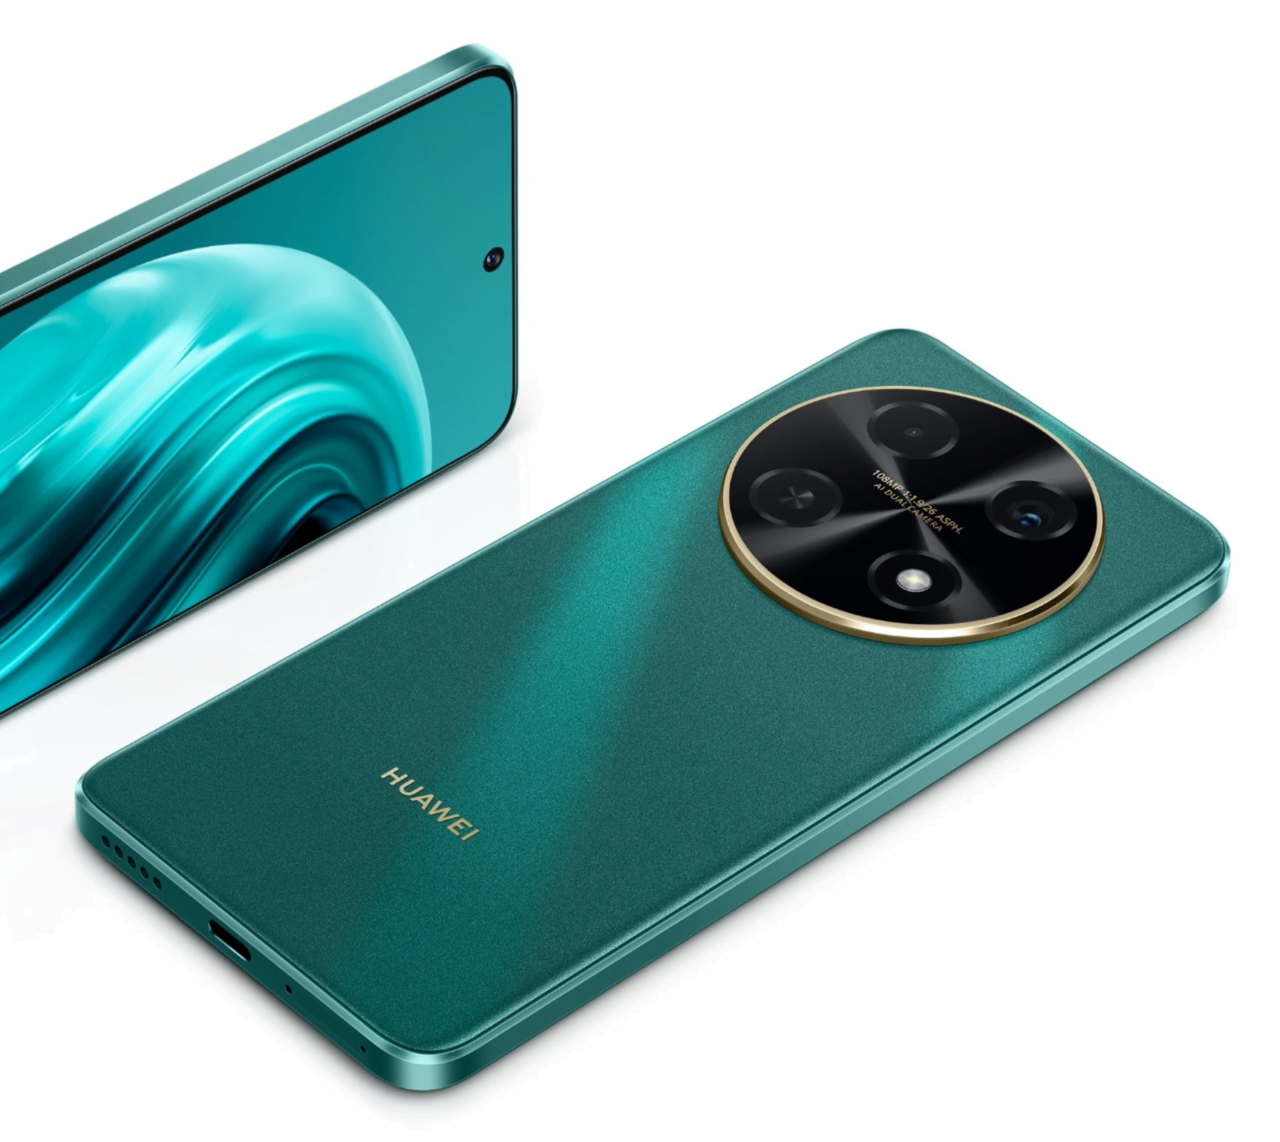 Zielony smartfon Huawei z modułem czterech aparatów fotograficznych umieszczonych w czarnej, okrągłej wyspie z złotą obramówką, leżący obok przedniej części innego smartfona tego samego koloru.